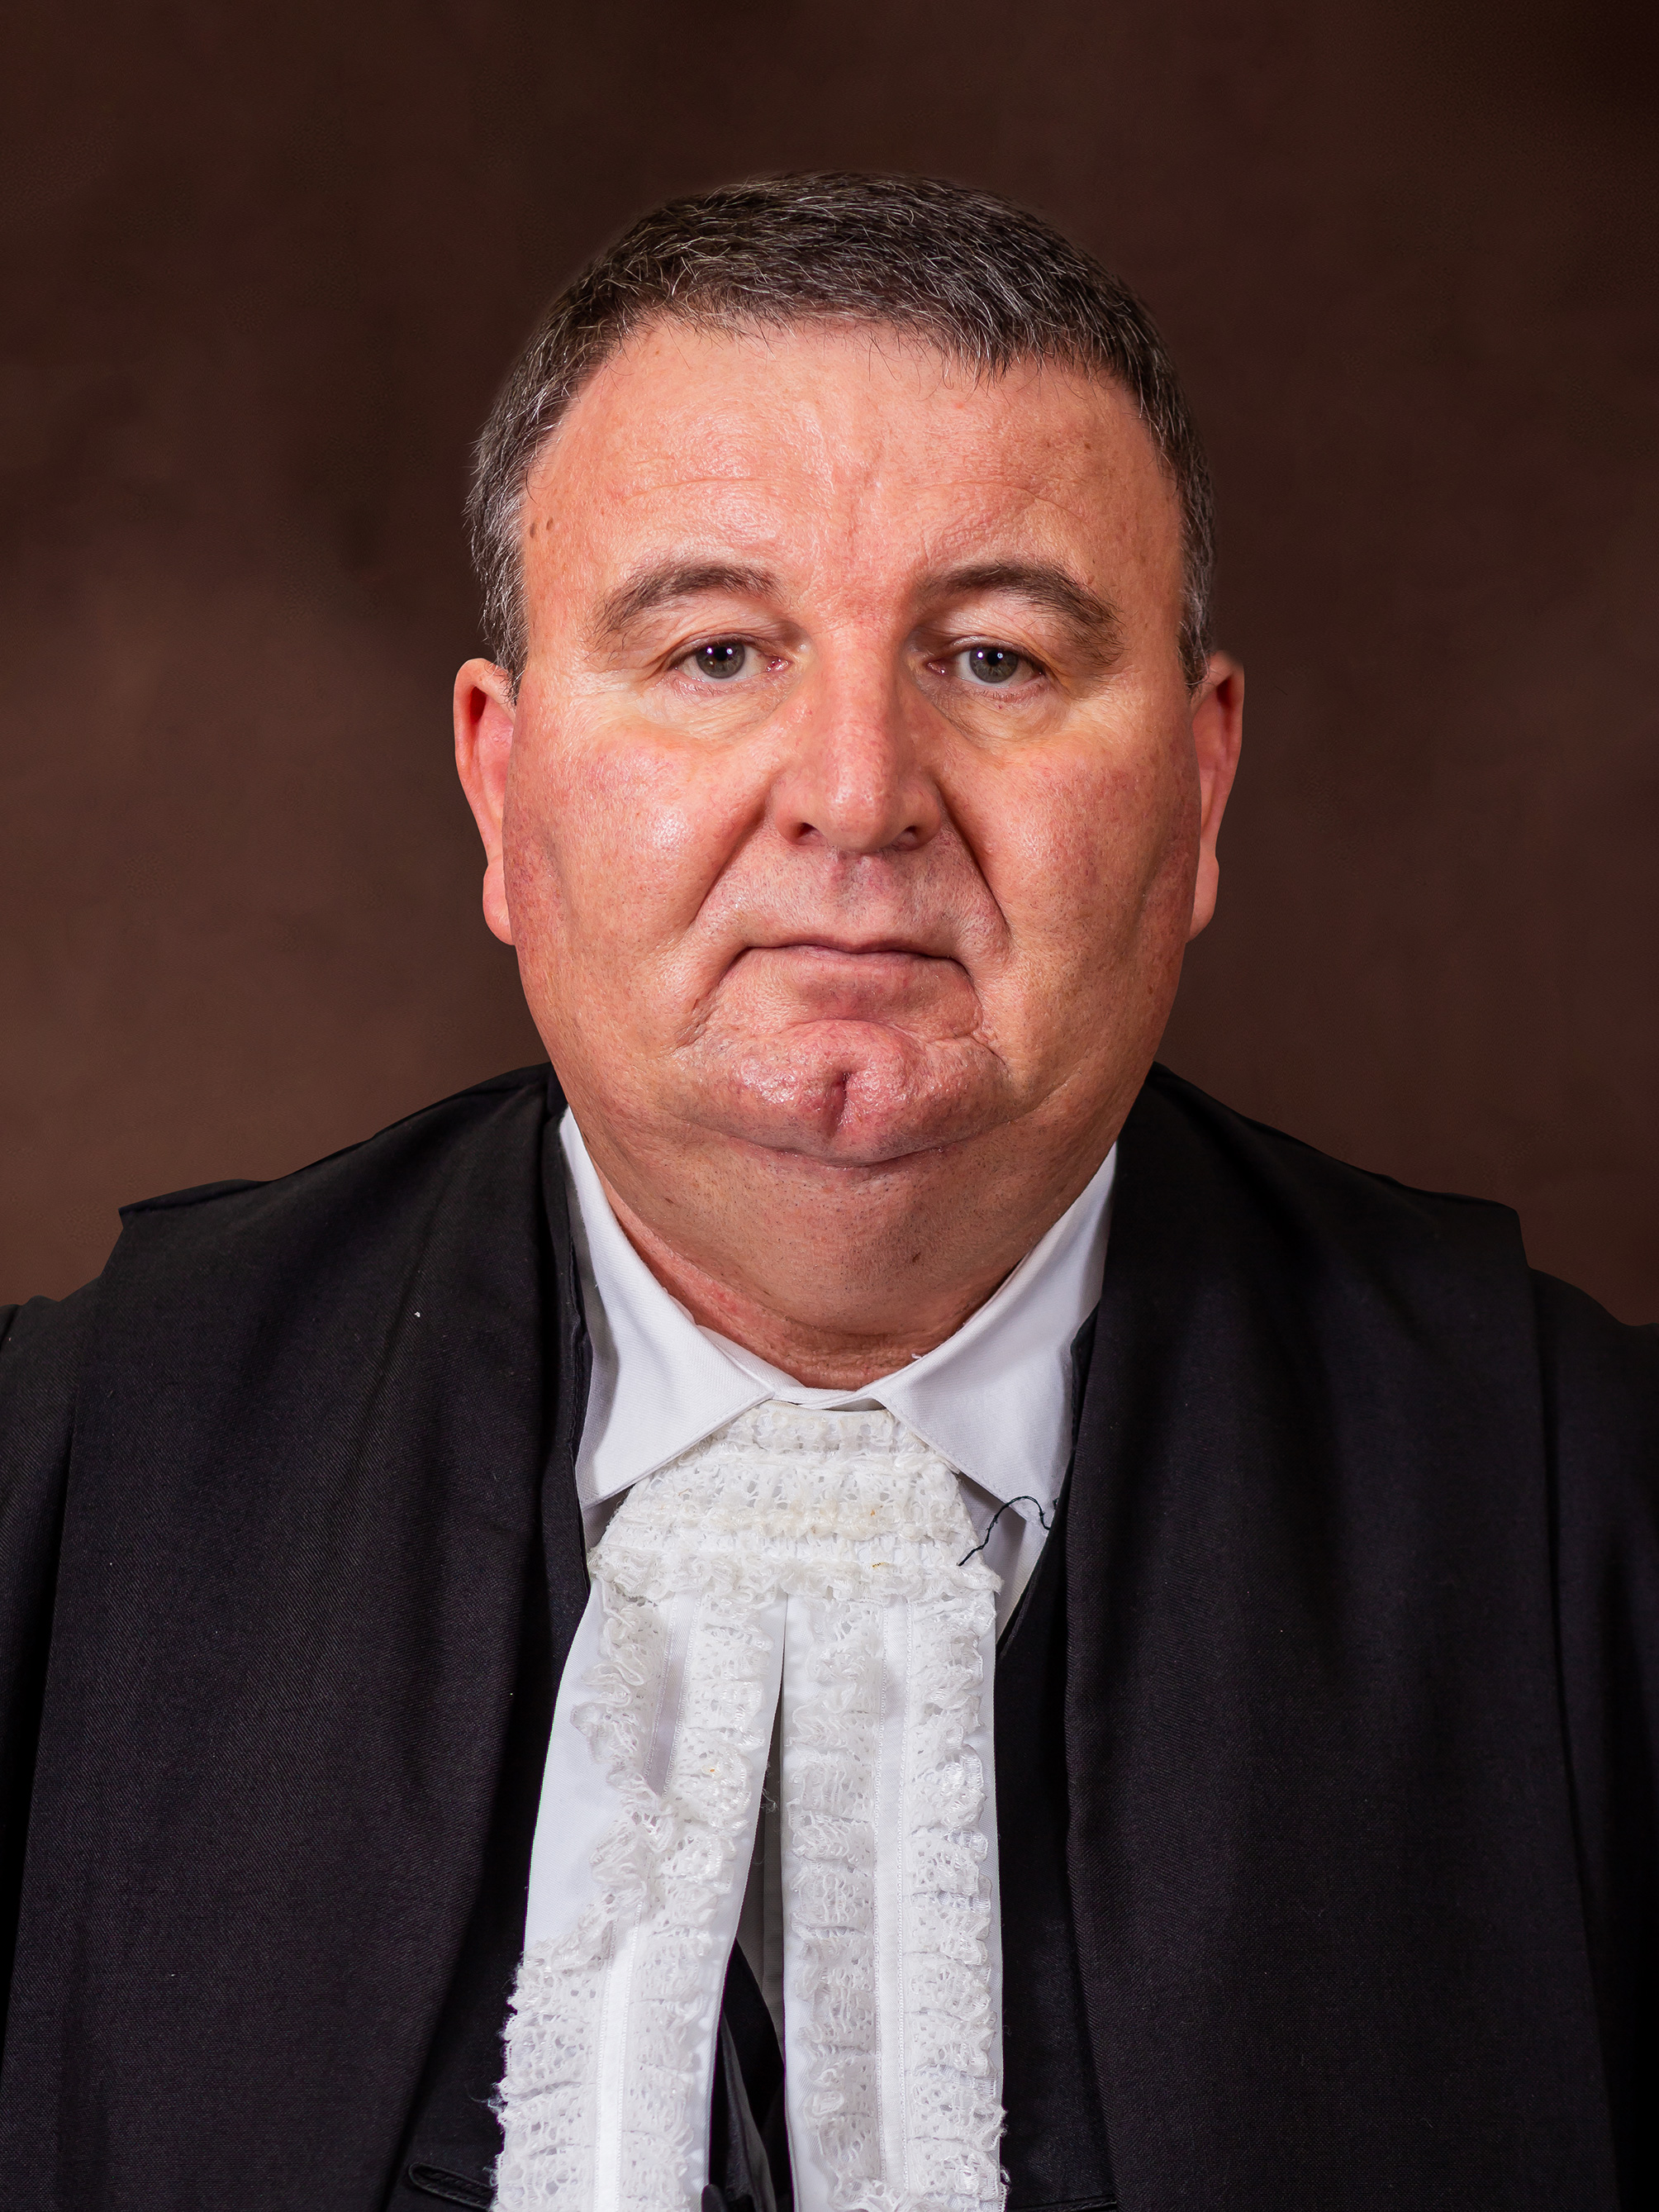 Deputy Judge President D van Zyl